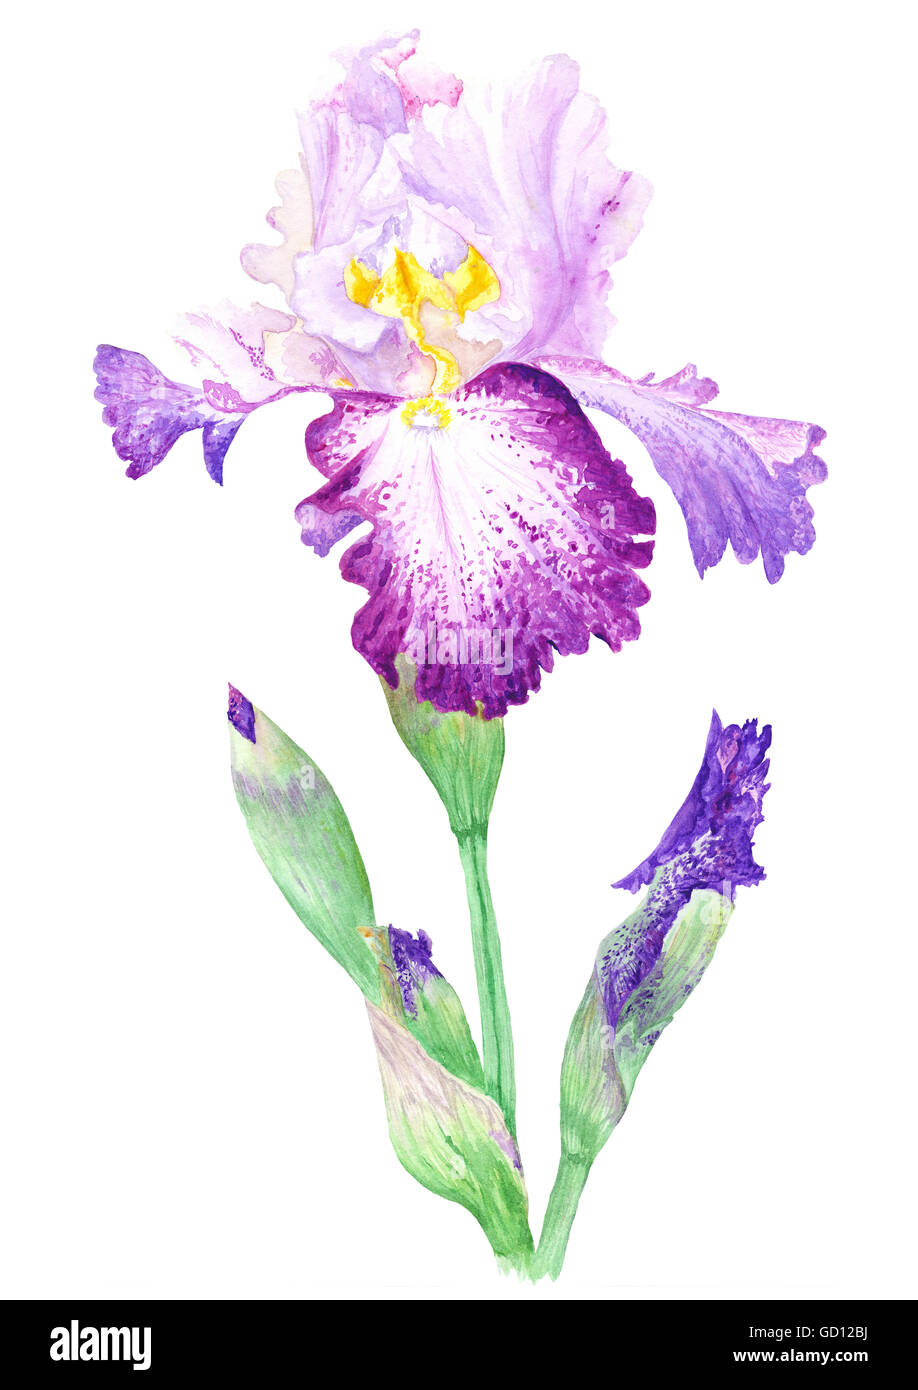 Qualitativ hochwertige detaillierte handgemalte blühenden Botanischen Blumenmalerei isoliert auf weißem Hintergrund Stockfoto